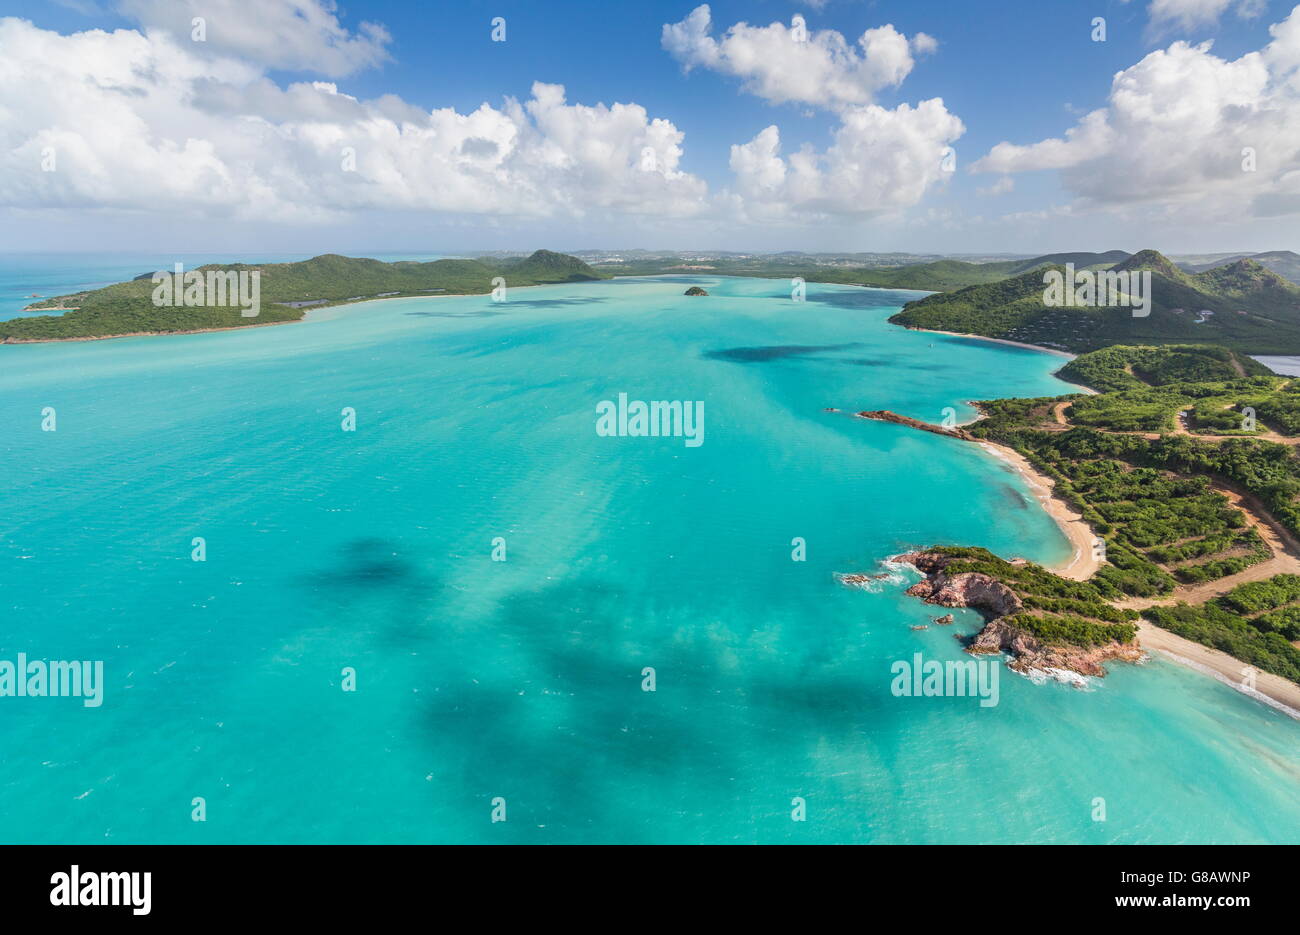 Vue aérienne de la mer turquoise des Caraïbes Antigua-et-Barbuda Antilles îles sous le vent Banque D'Images